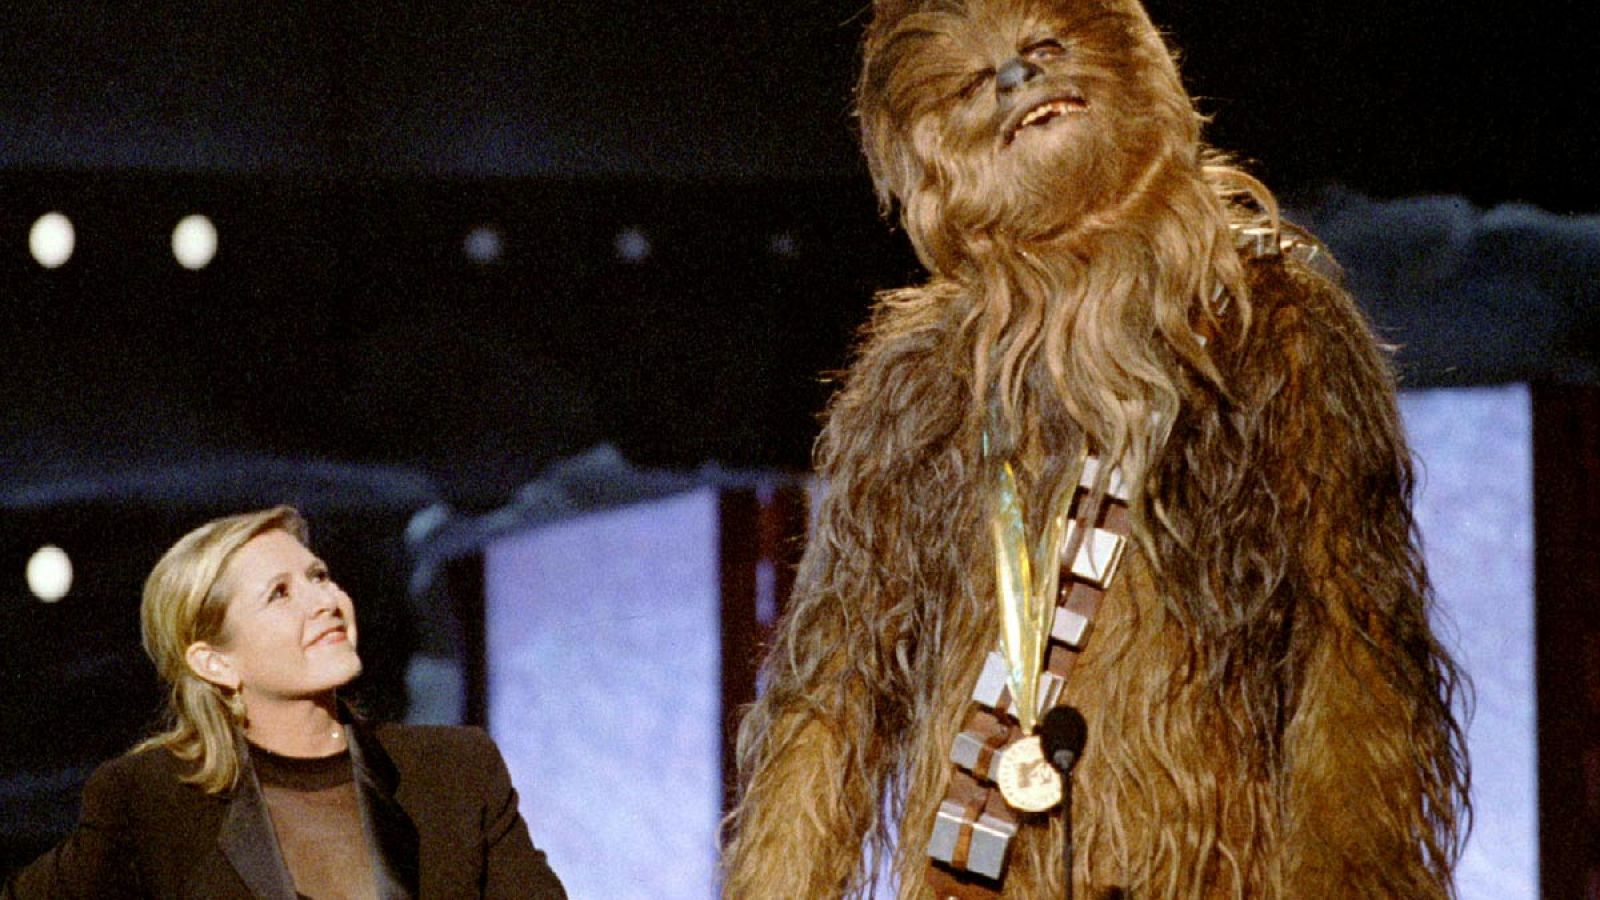 Fotografía de archivo del 7 de junio de 1997, en la actriz Carrie Fisher, la Princesa Leia, posa junto al "wookie" Chewbacca de Star Wars durante una gala de MTV.